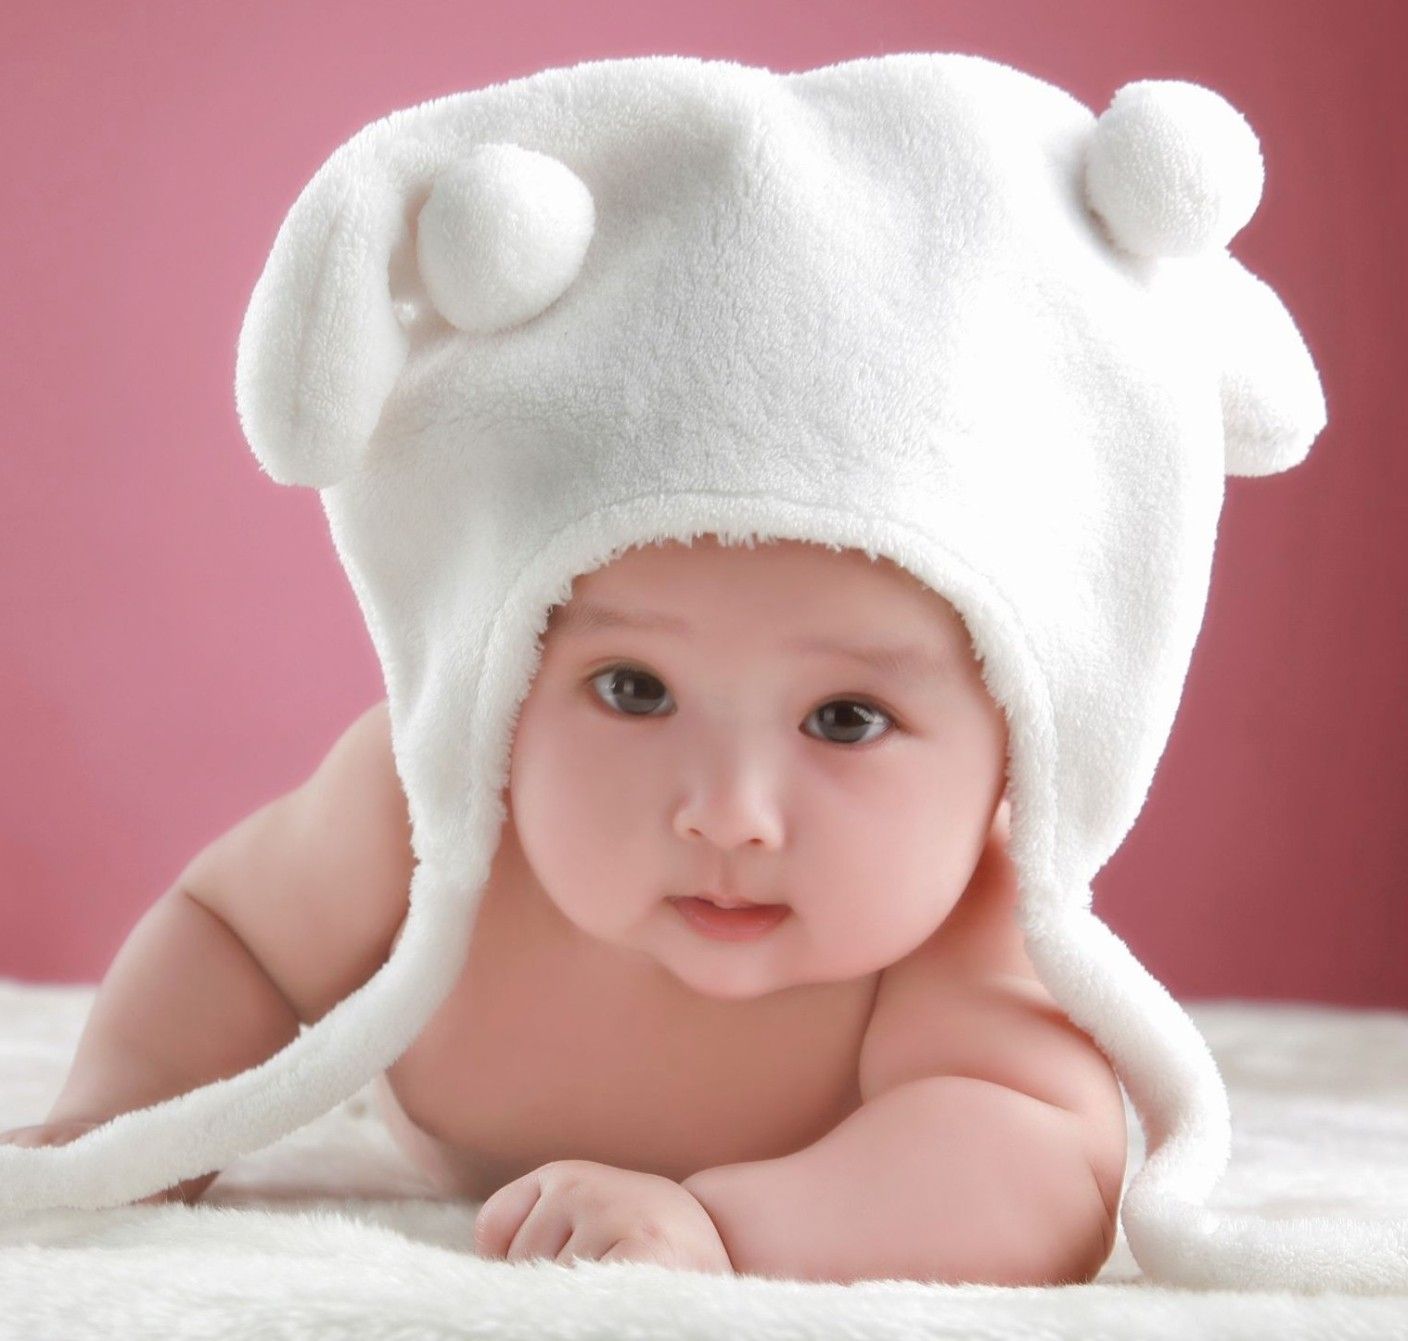 50 Hình ảnh baby dễ thương đáng yêu ngộ nghĩnhhình em bé dễ thương